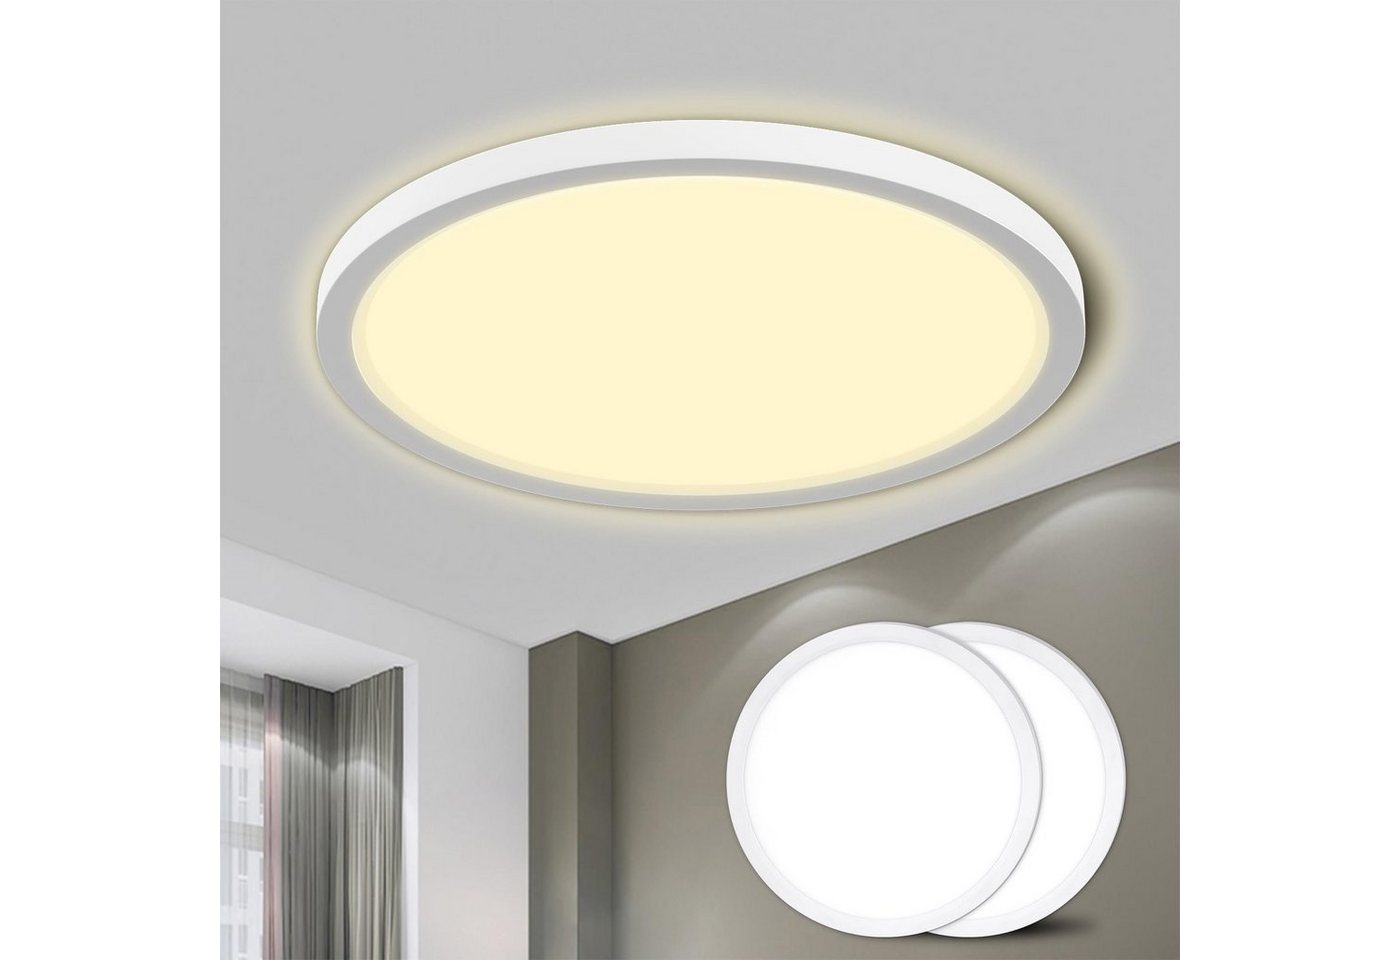 LQWELL LED Deckenleuchte Rund Flach LED Deckenlampe 2 Stück, 18W,1600LM, LED fest integriert, neutralweiß, IP44 Wasserfest Badlampe, Modern Schlicht Lampe von LQWELL